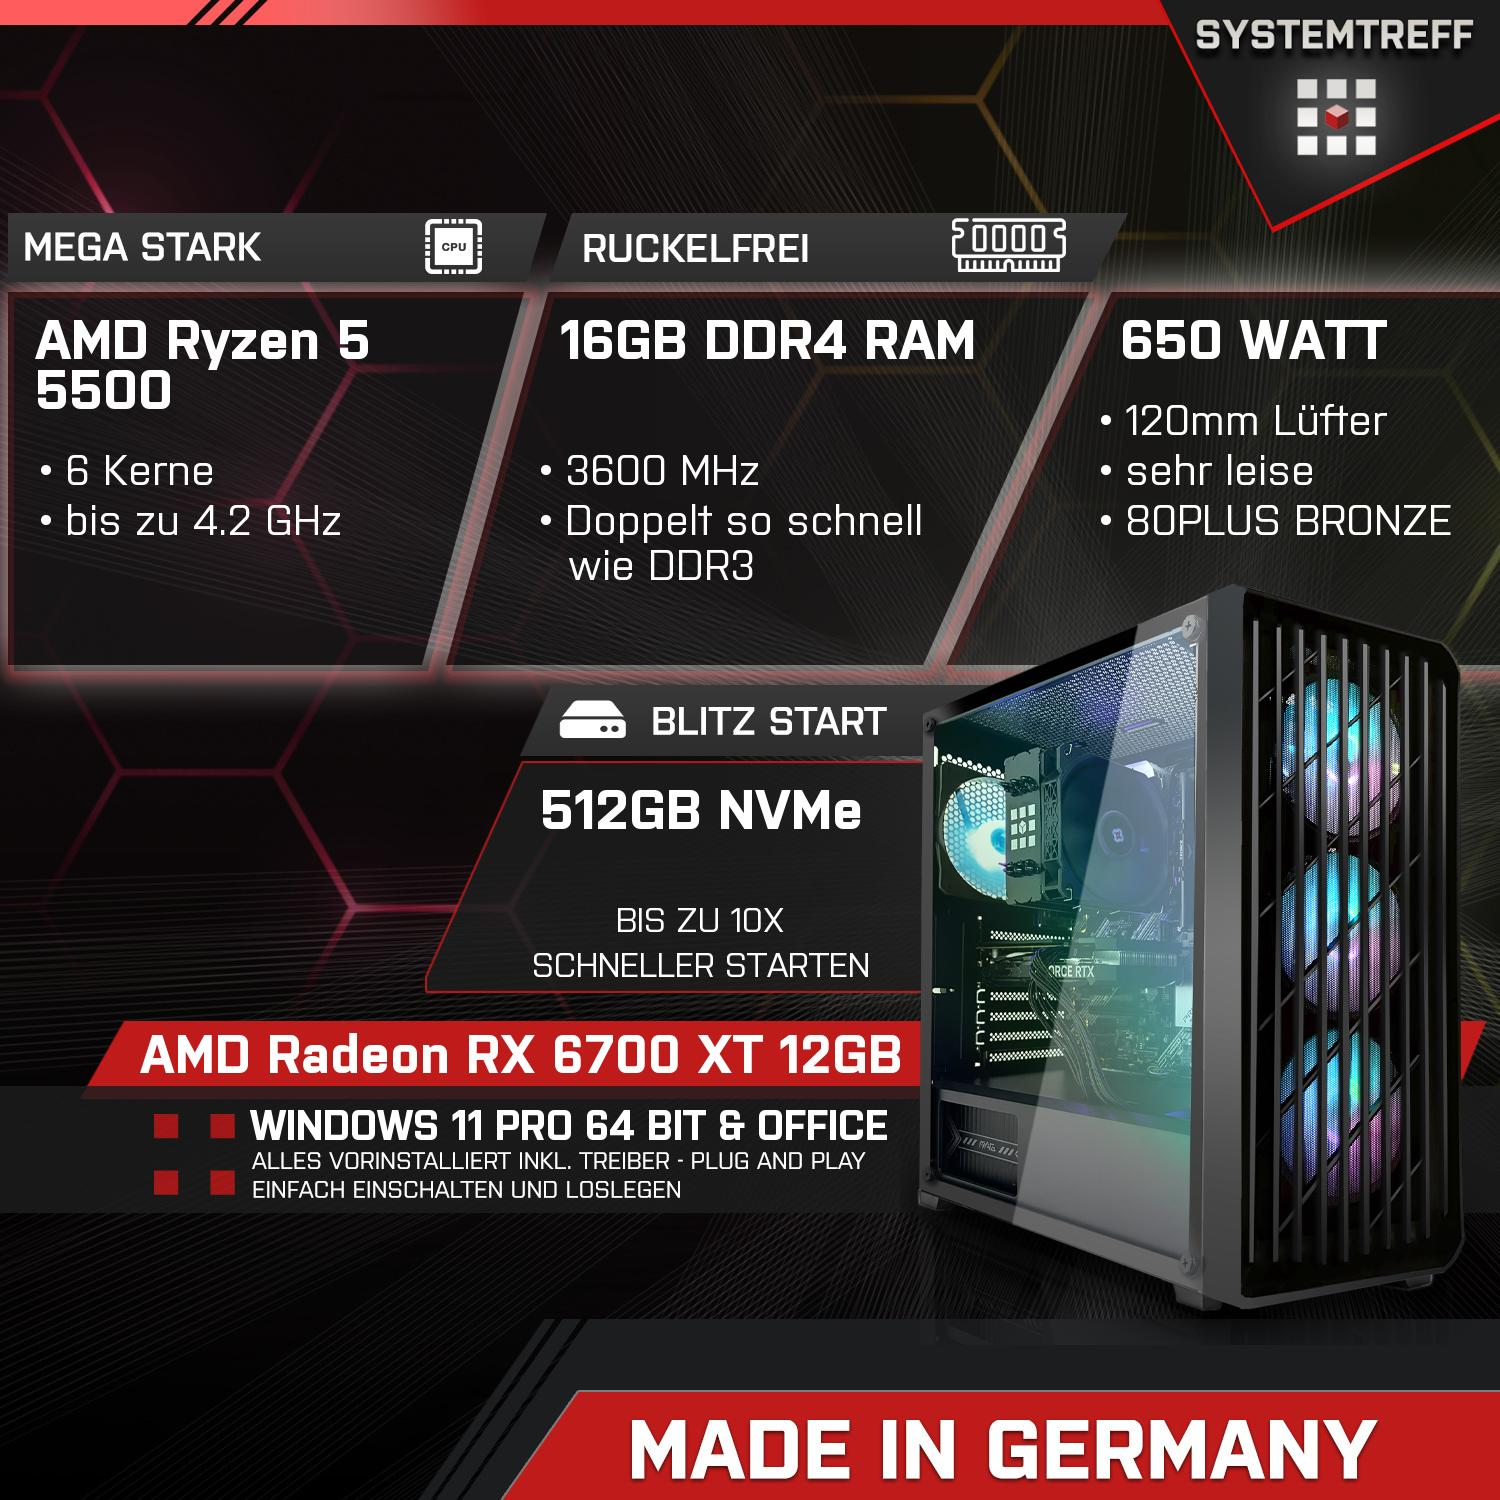 12GB Radeon 5 Ryzen GB 5500 RX AMD Komplett Prozessor, PC AMD SYSTEMTREFF 5500, Gaming XT Komplett GB GB 16 GDDR6, 12 mit RAM, mSSD, 512 6700